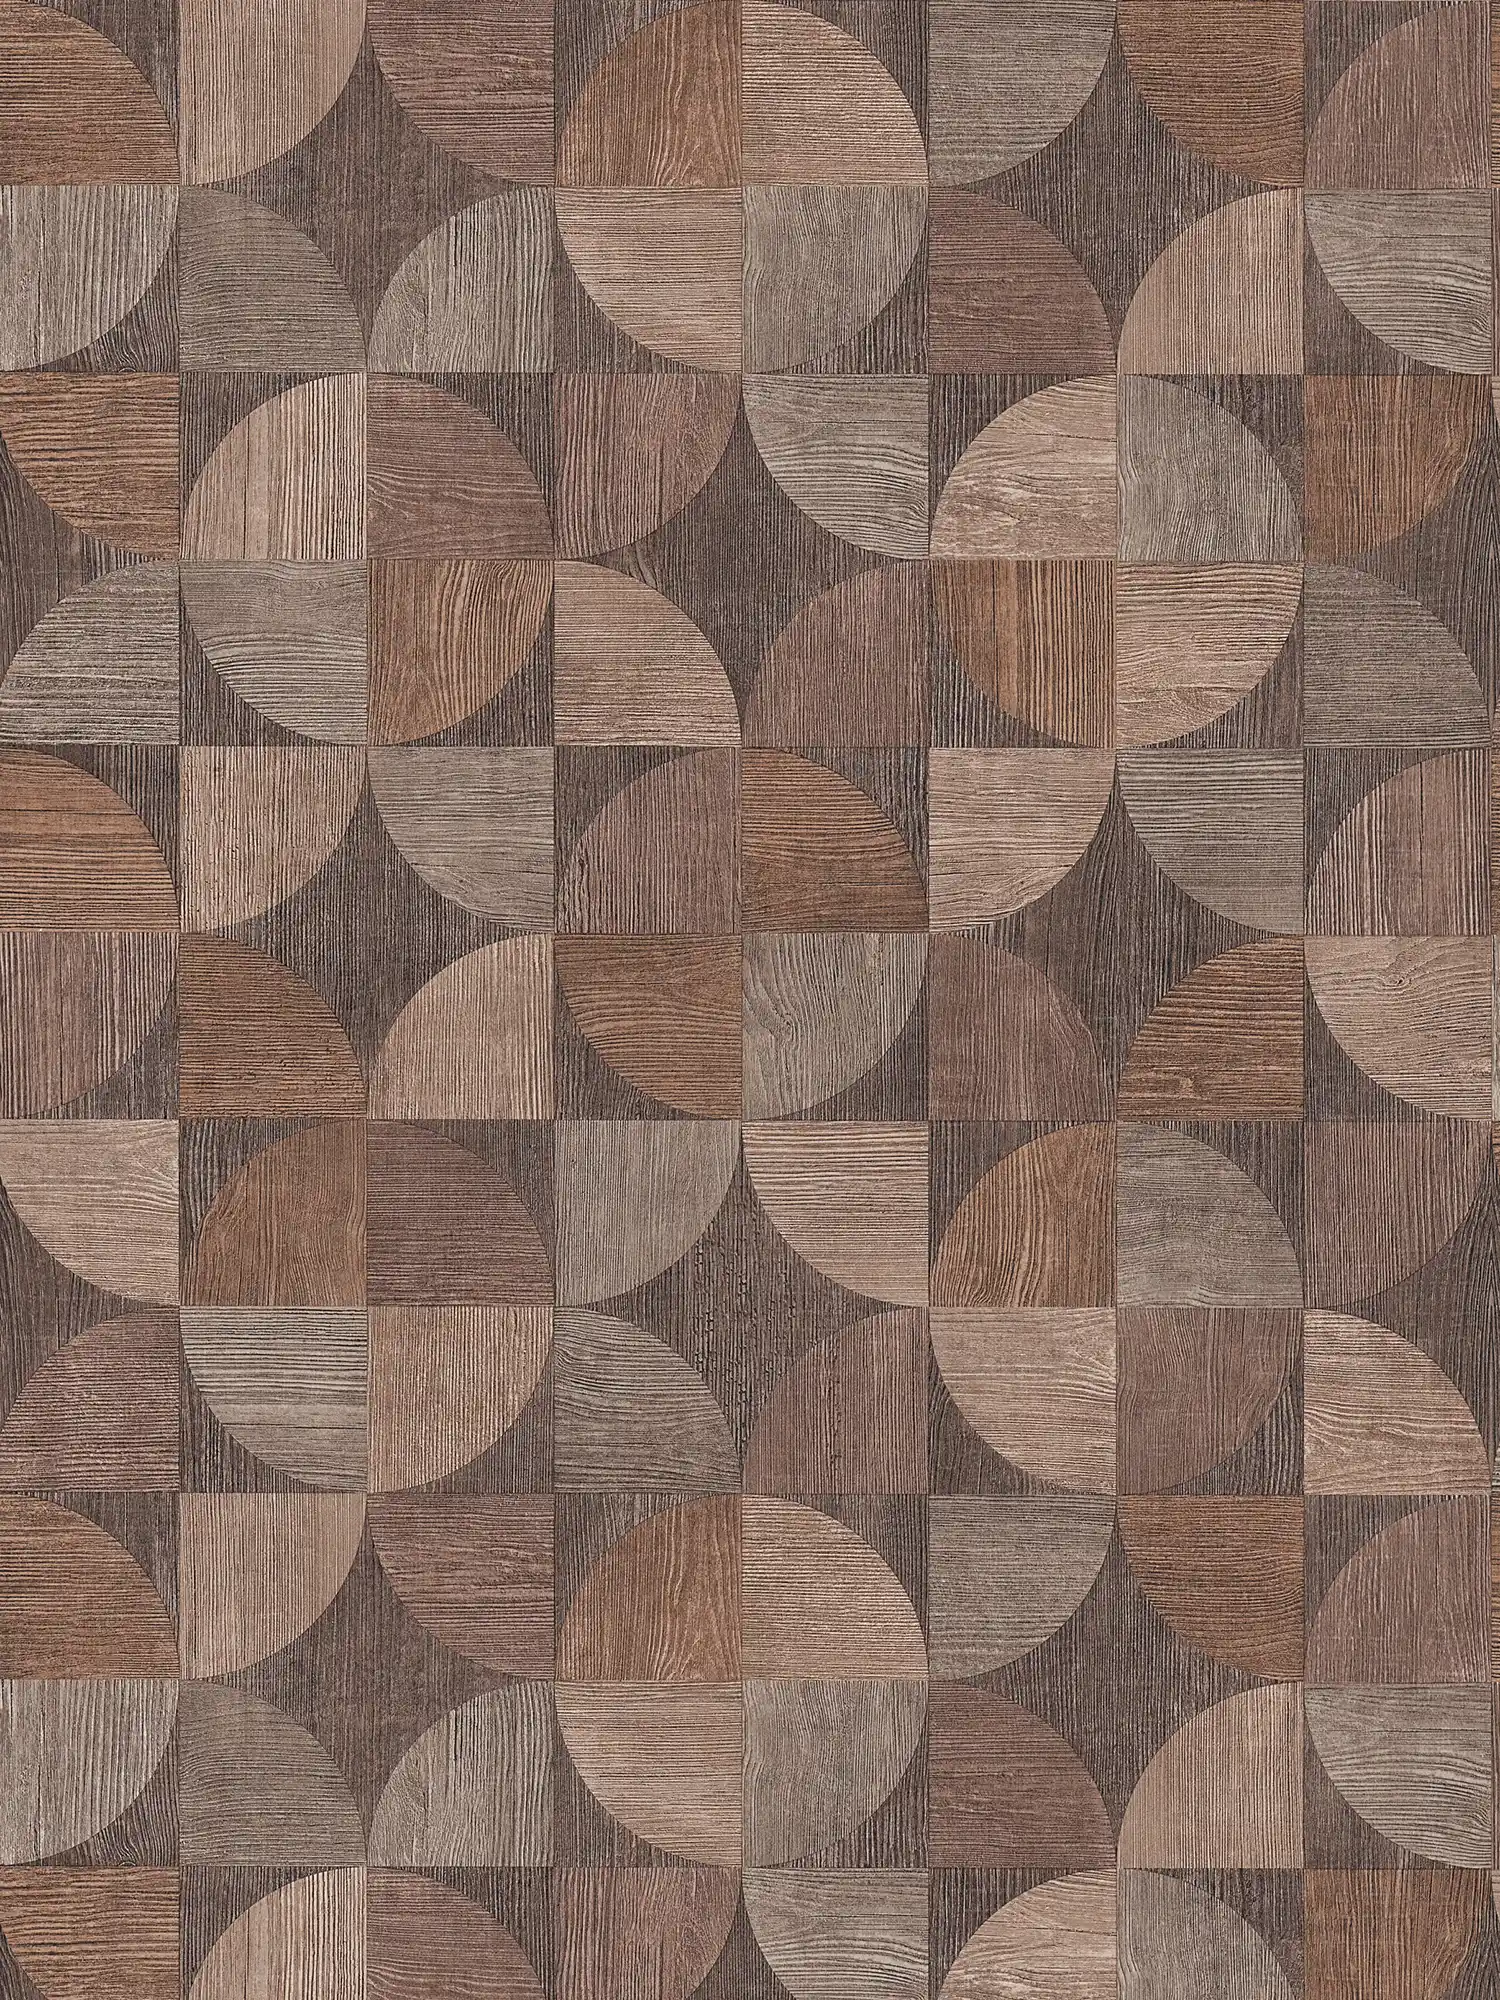 Behang met grafisch houtpatroon - bruin, beige, grijs
